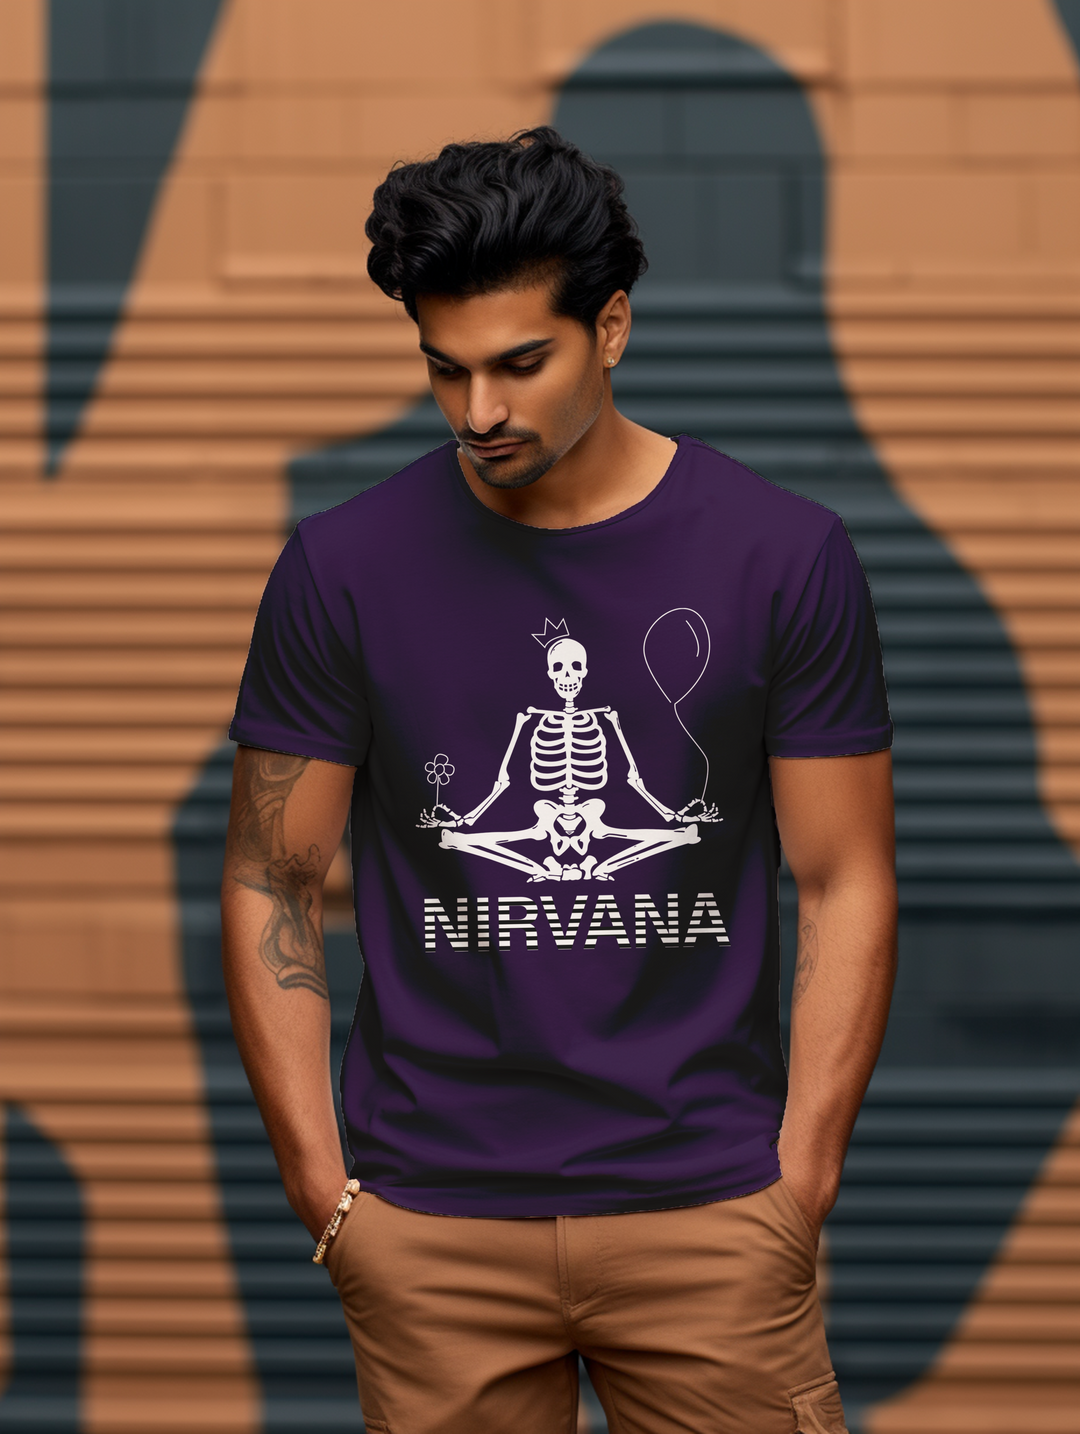 Men's Nirvana tee